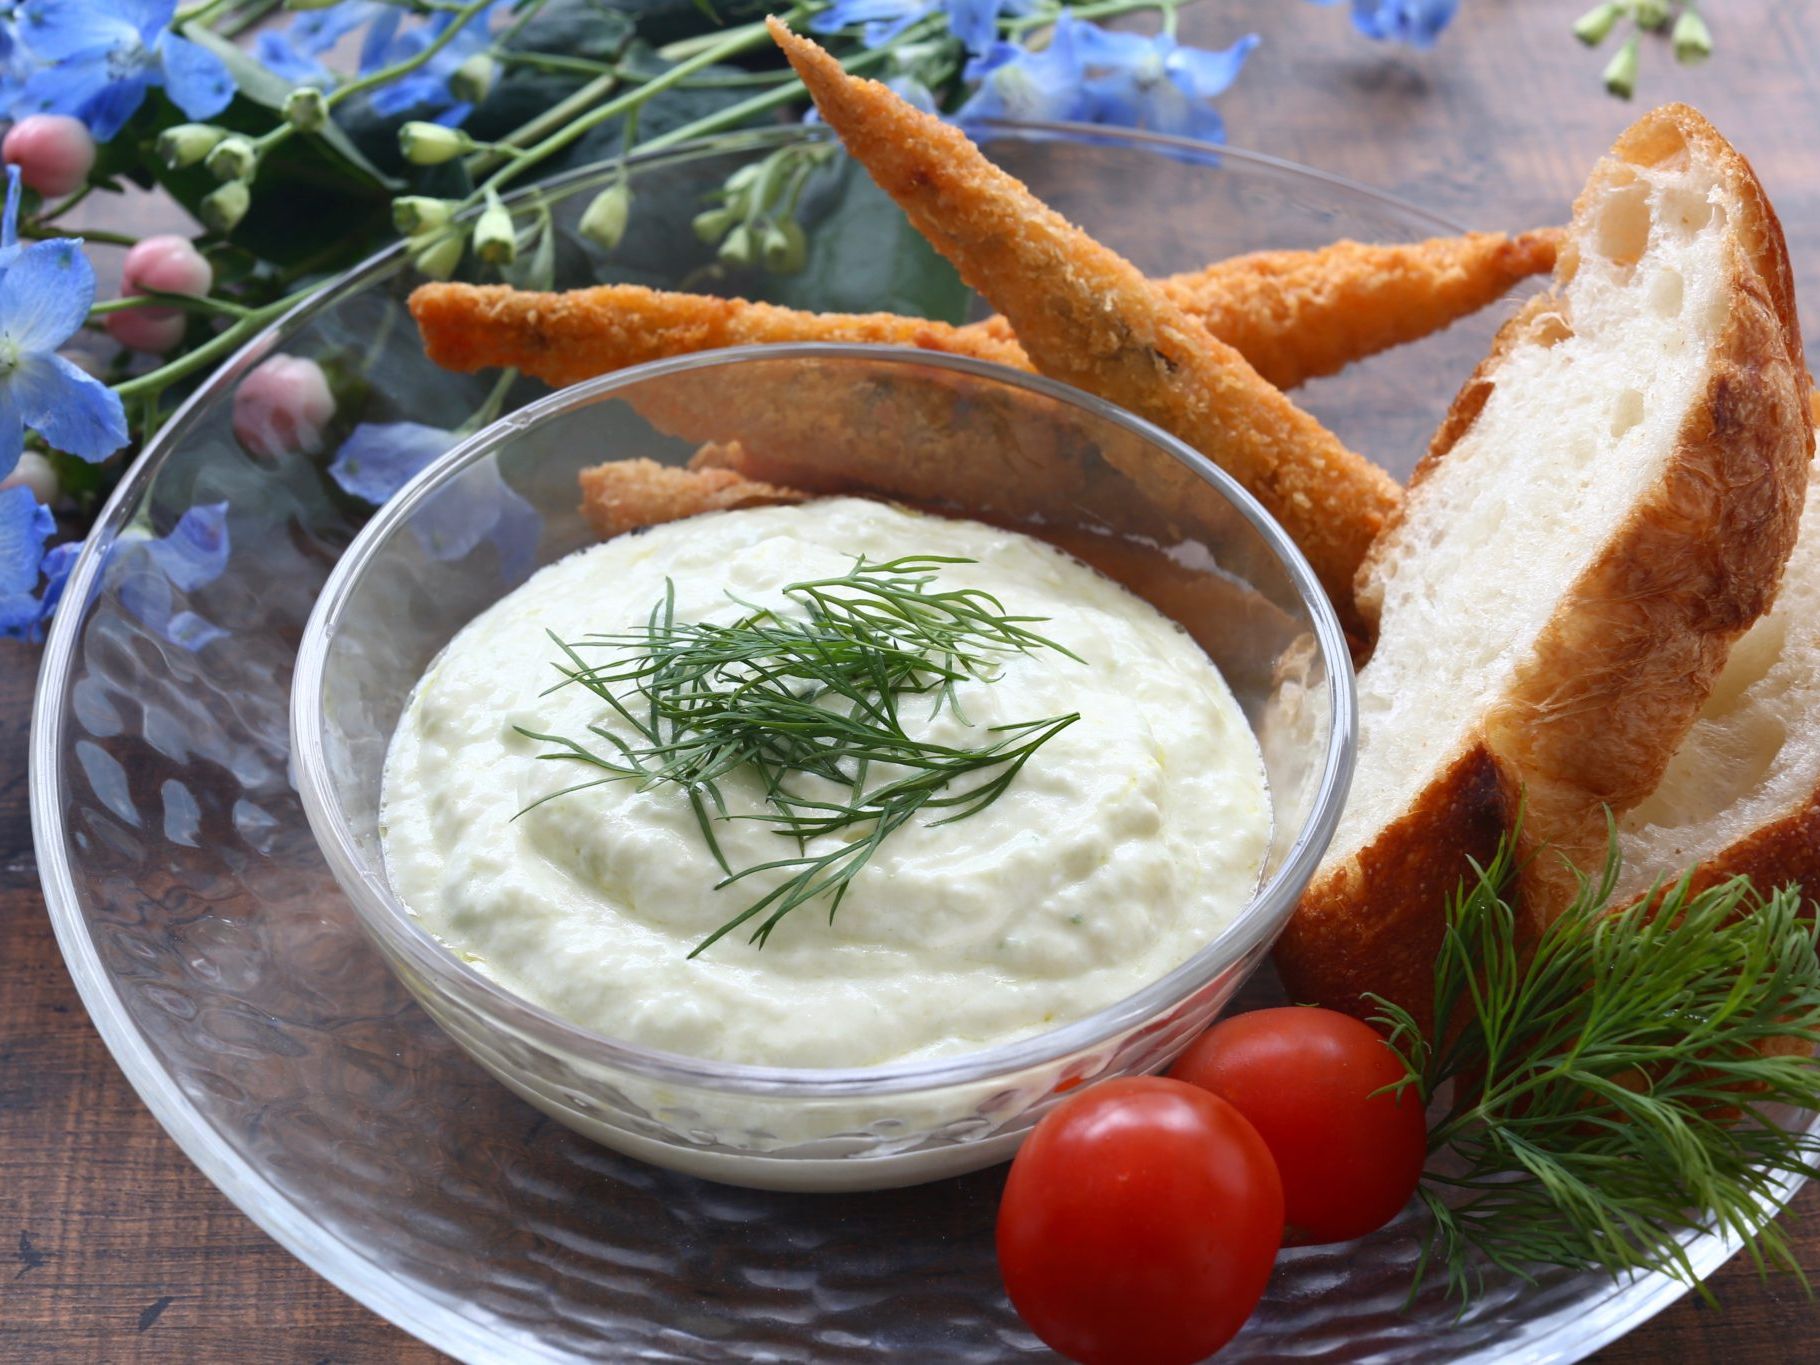 ザジキの作り方と食べ方 ギリシャ料理の定番ソースのレシピを徹底解説 やまでら くみこ のレシピ